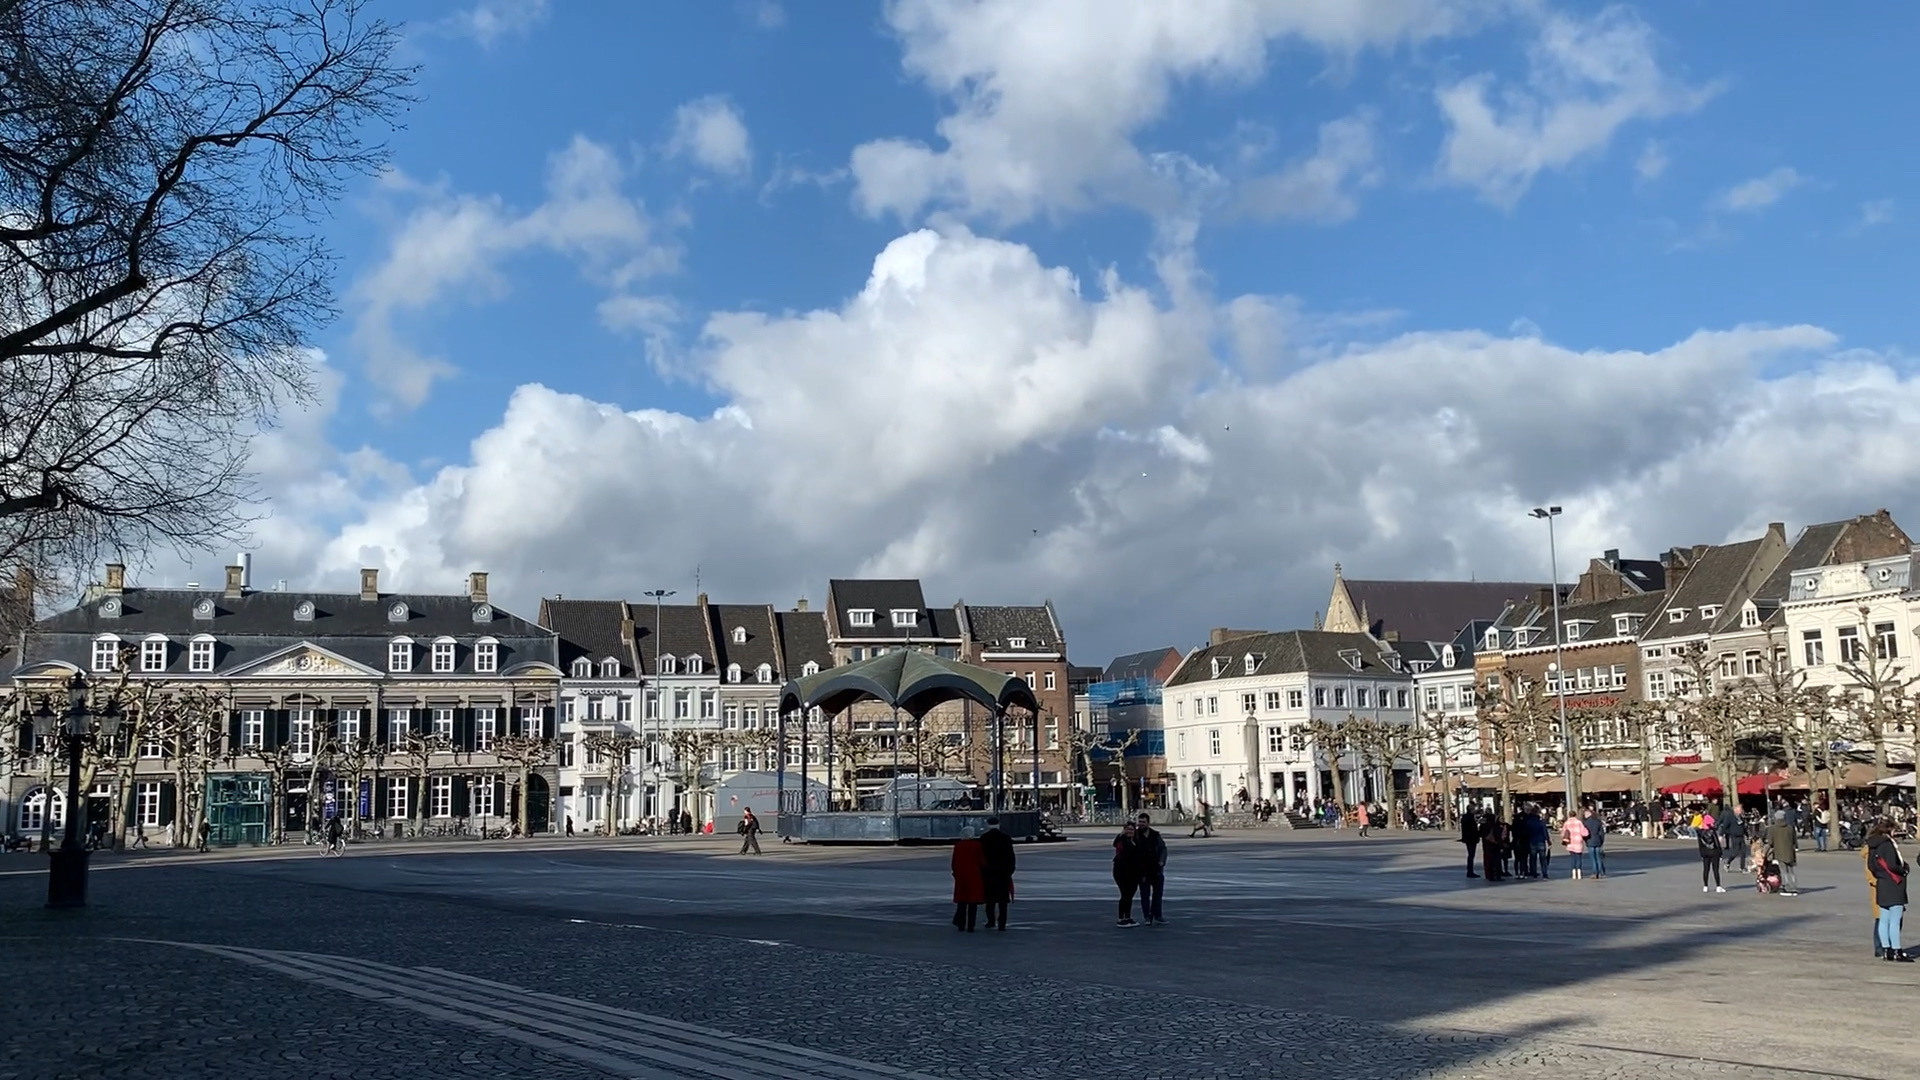 荷兰Maastricht市中心vrijthof广场及教堂景色